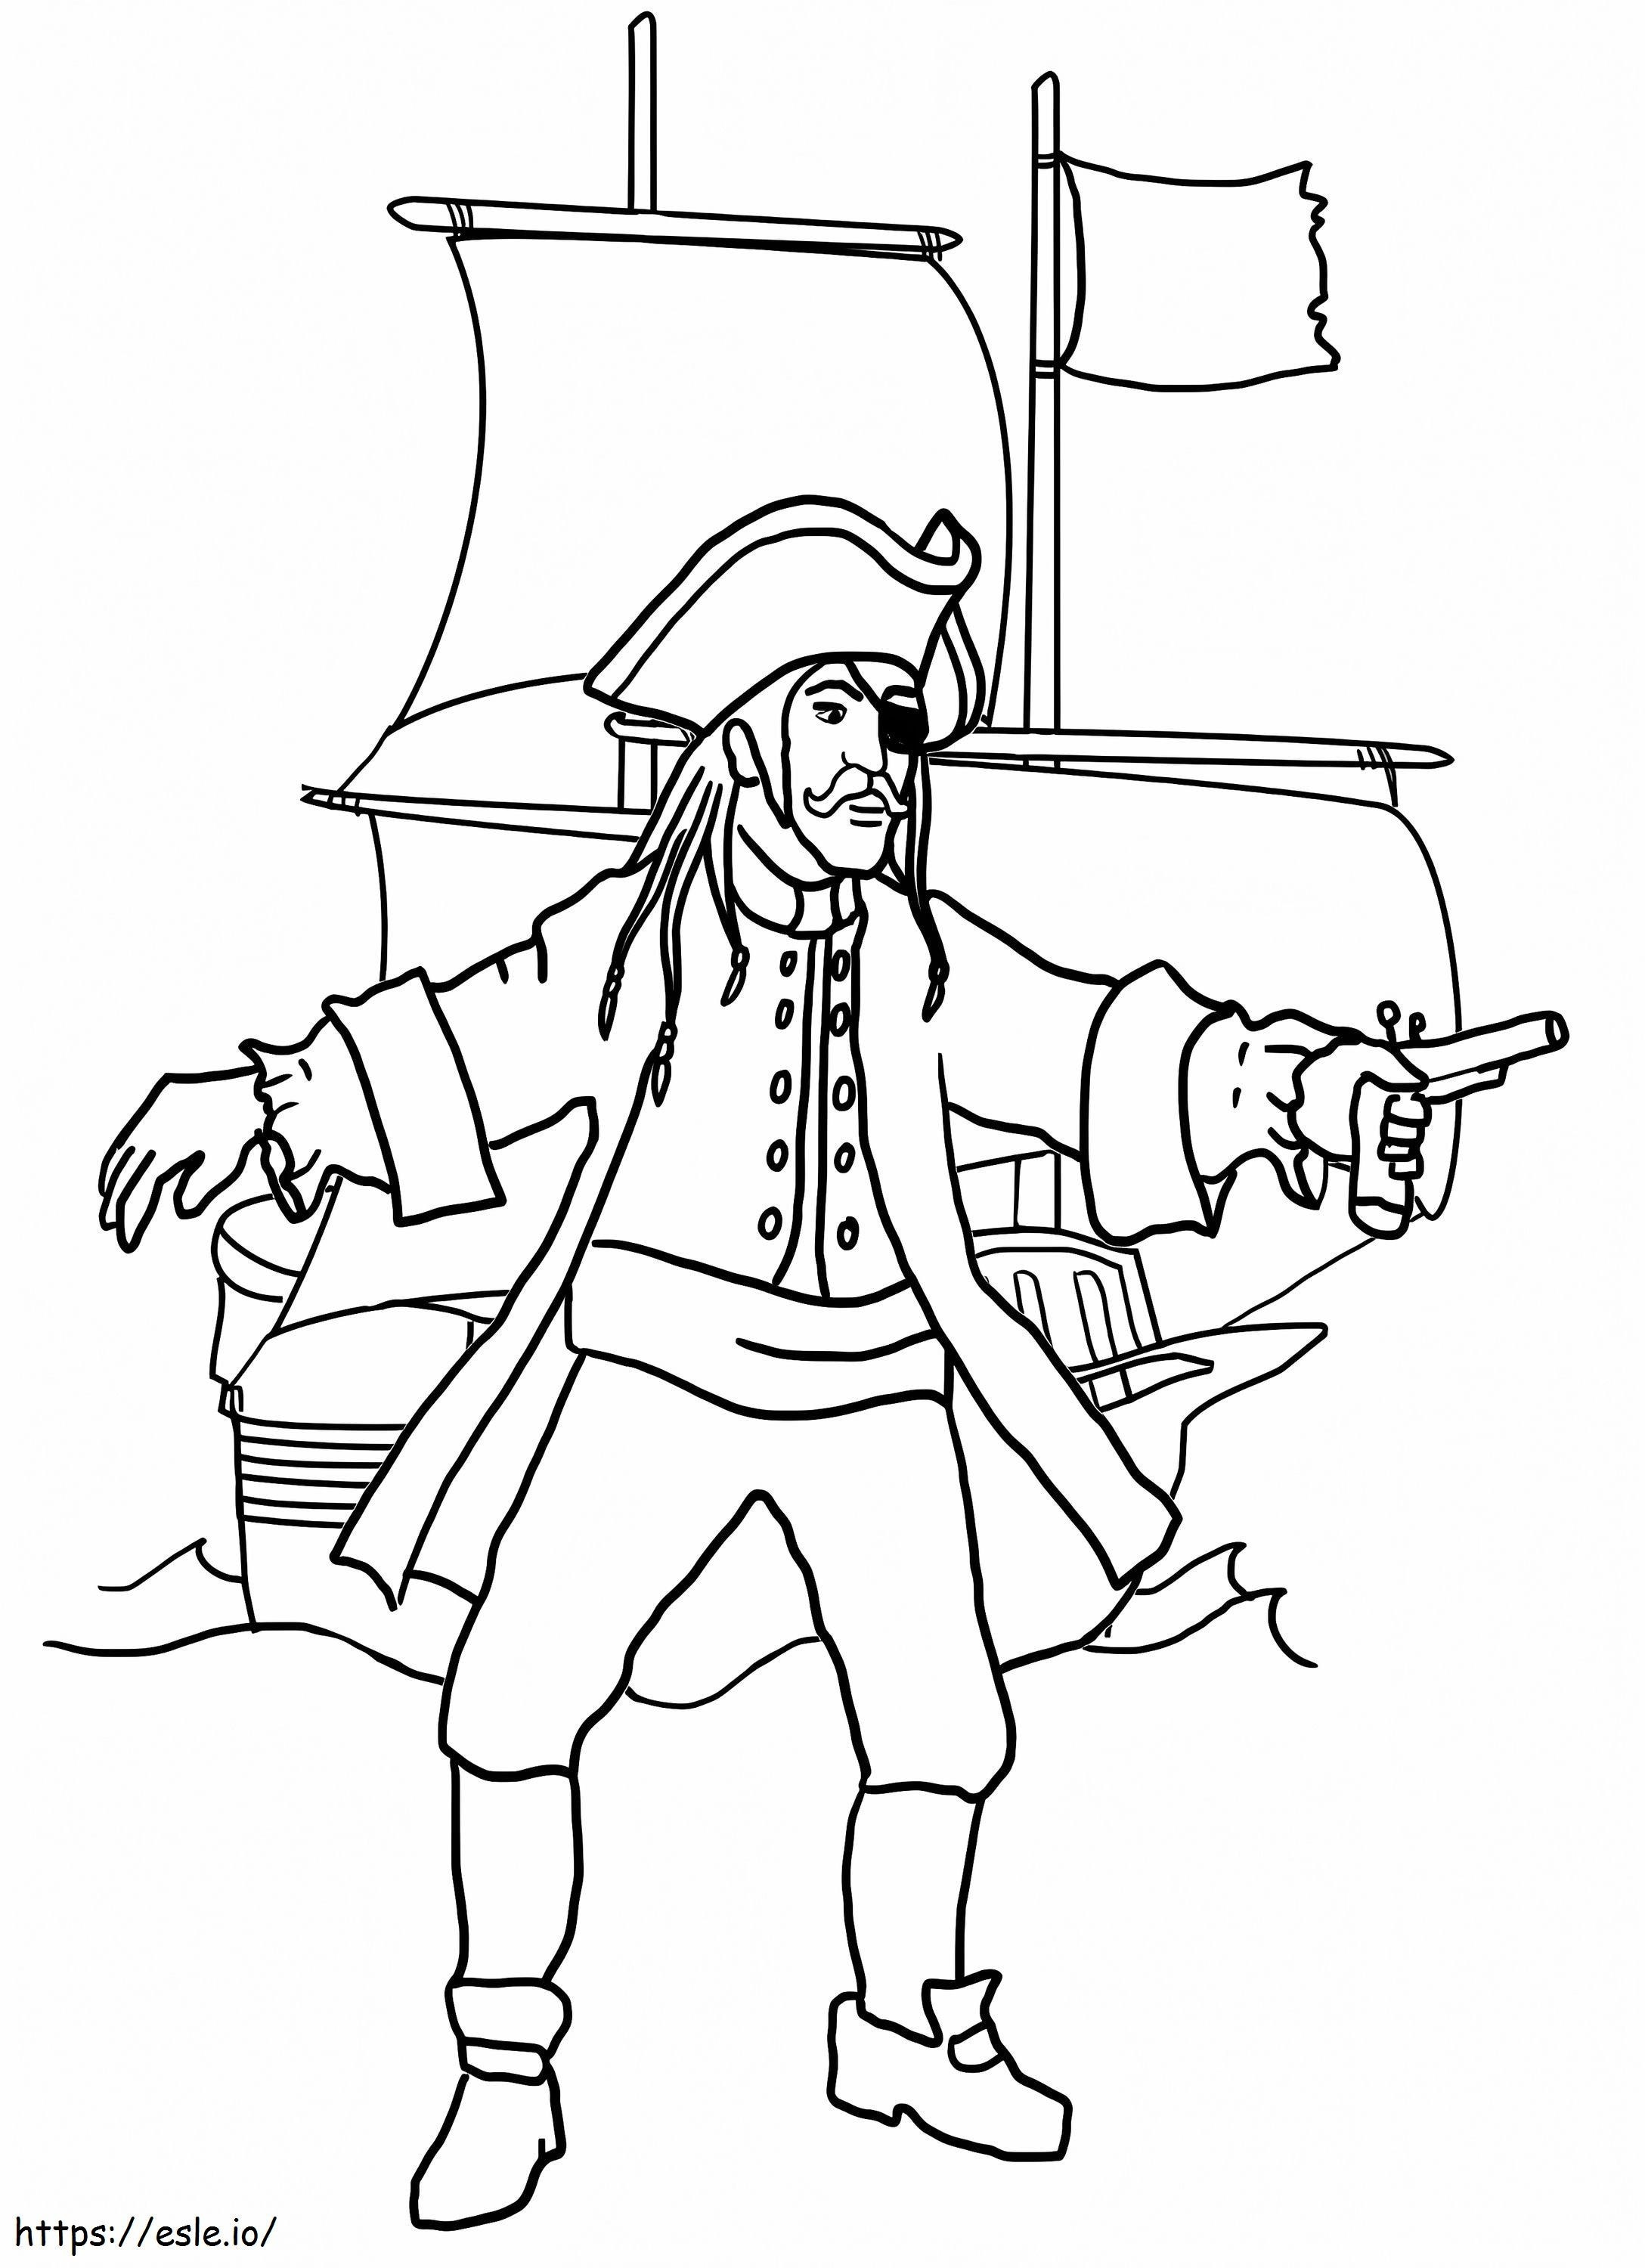 Pagina da colorare di pirati e navi pirata da colorare